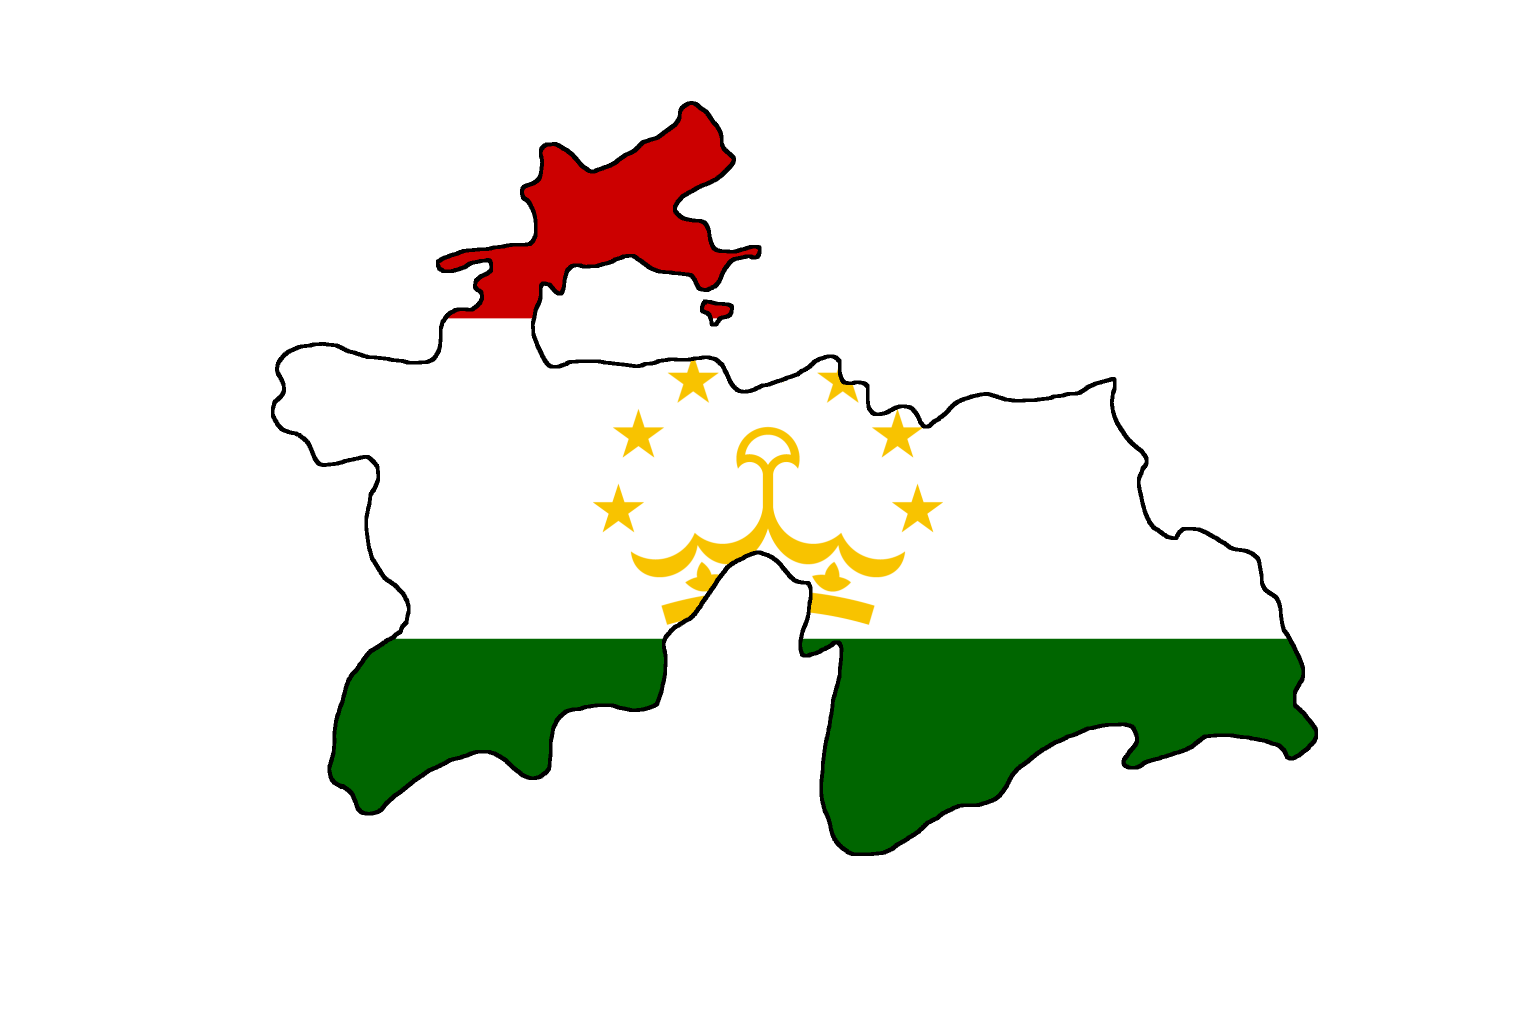 Таджикская территория. Карта Таджикистана вектор. Флагшток - национальный флаг Республики Таджикистан. Таджикистан карта флаг. Территория Таджикистана с флагом.